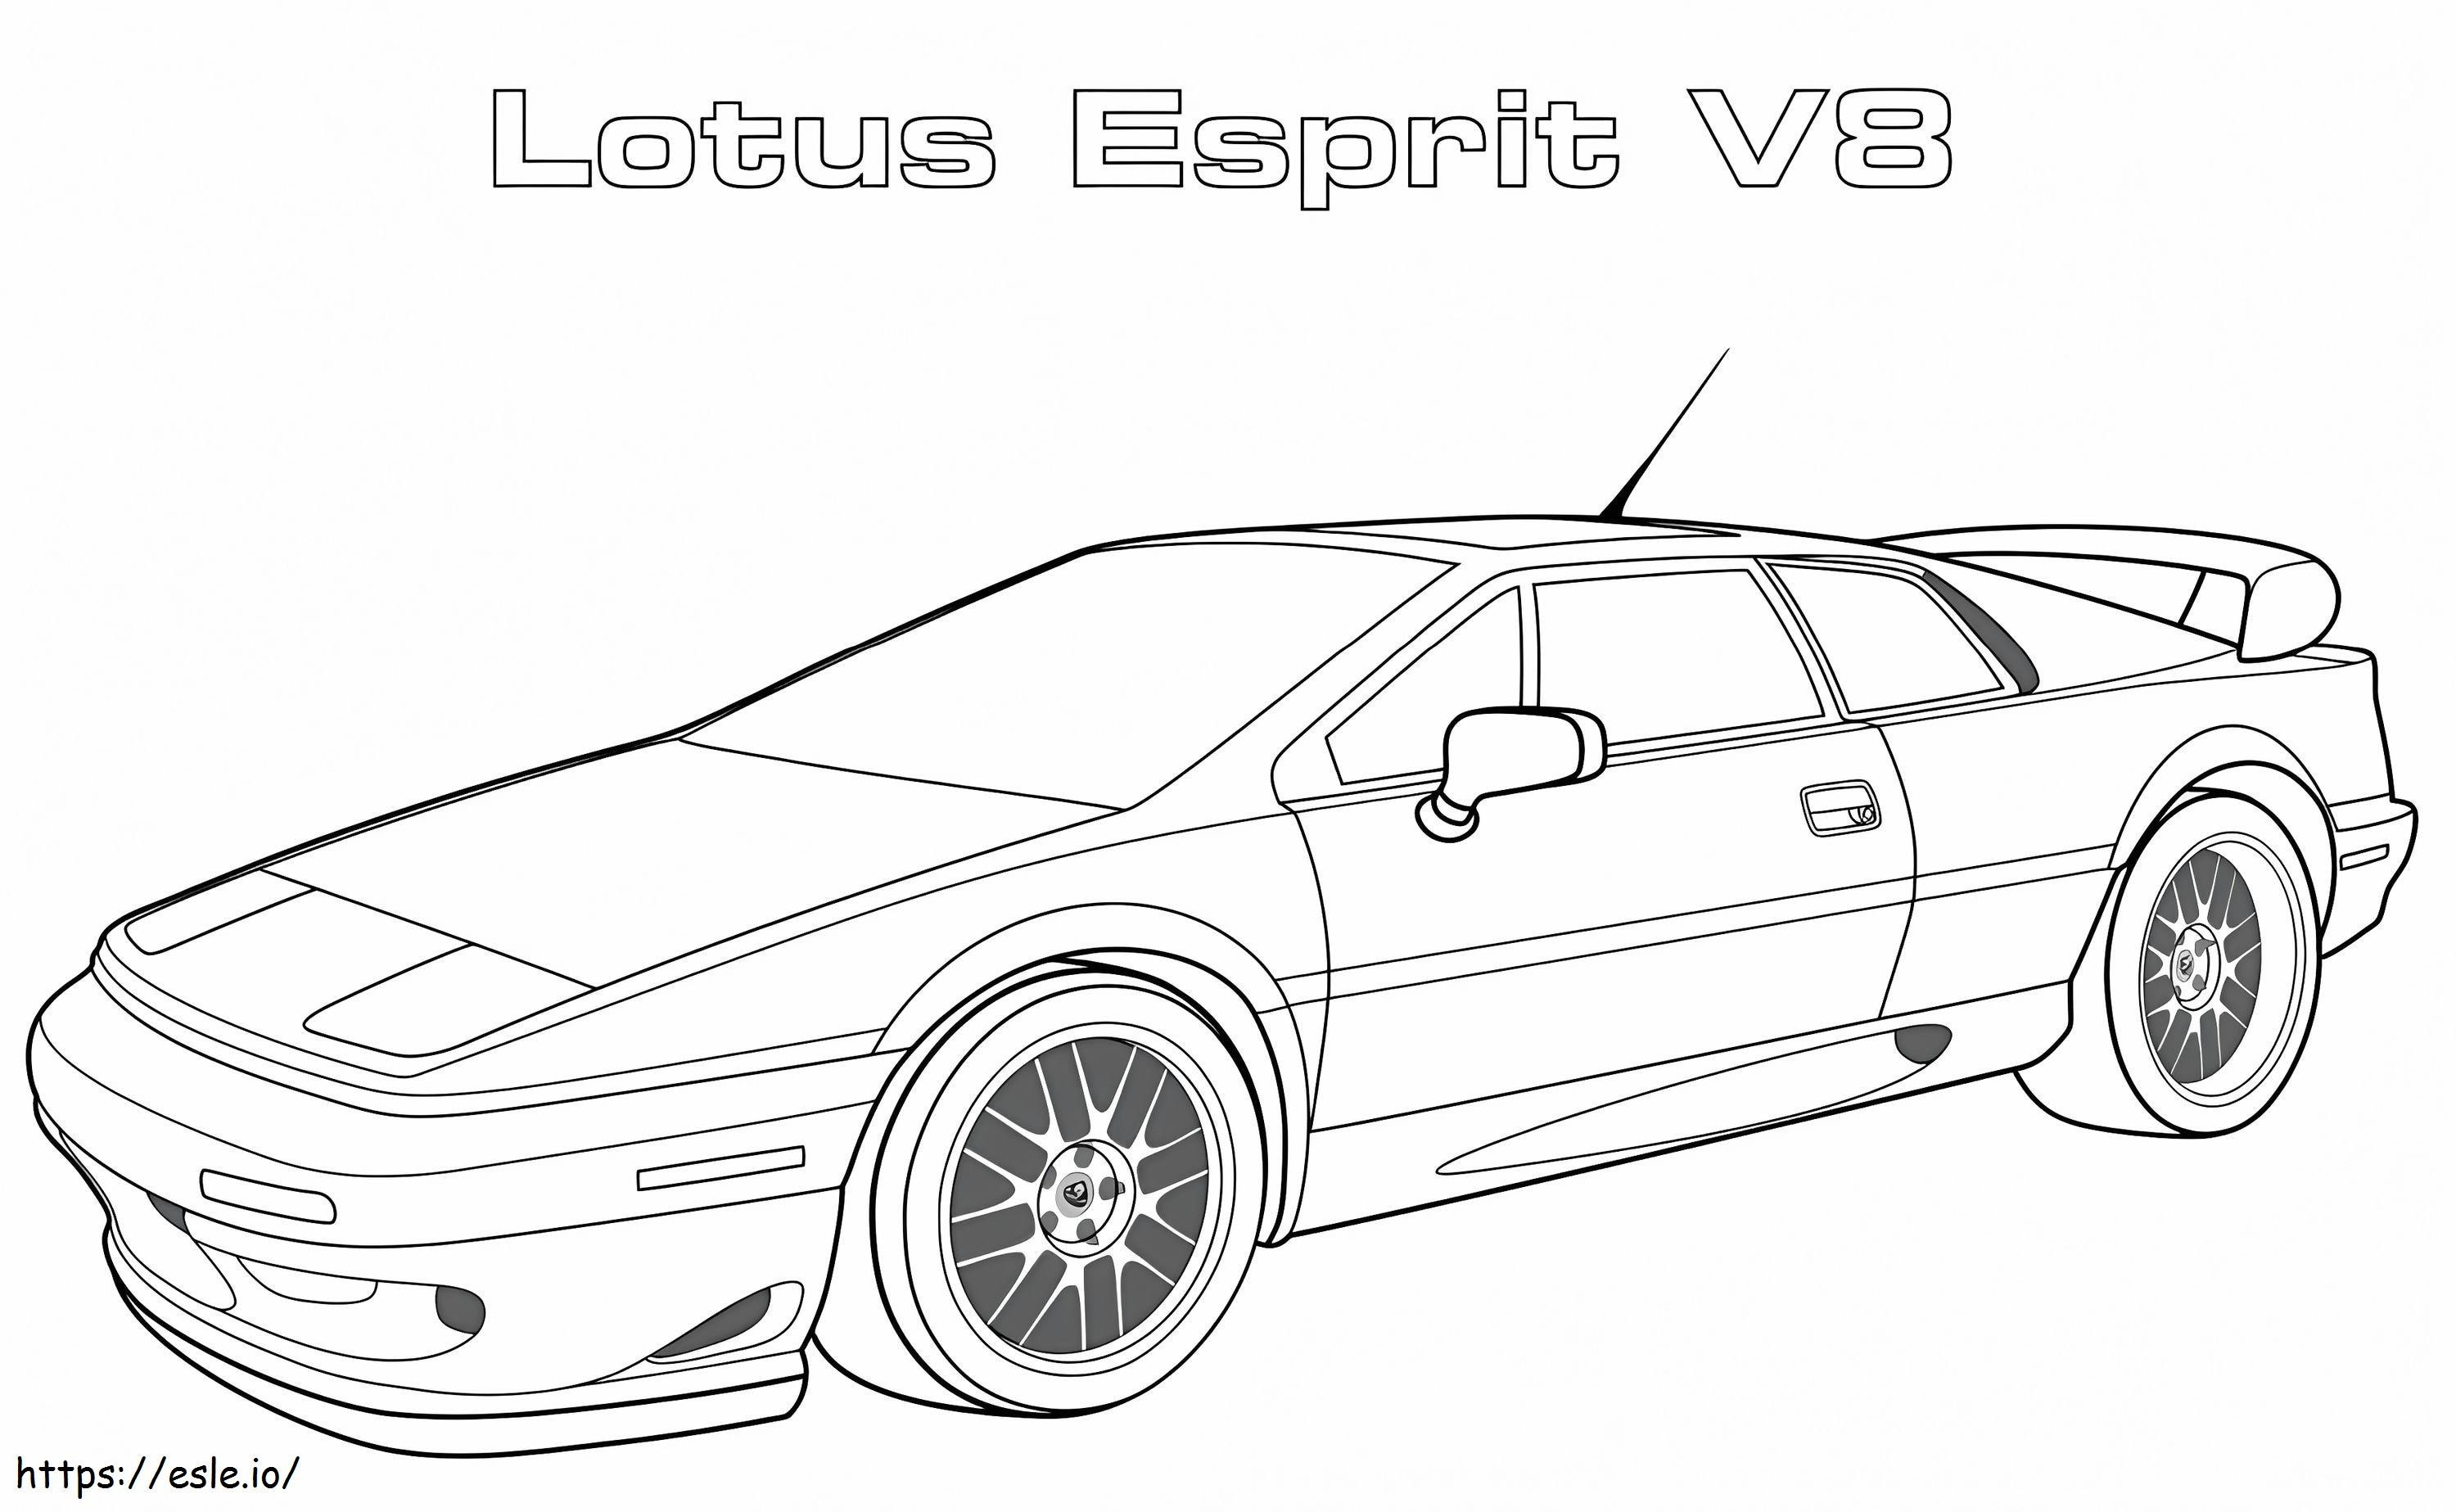 1560417915 Lotus Esprit V8 A4 coloring page